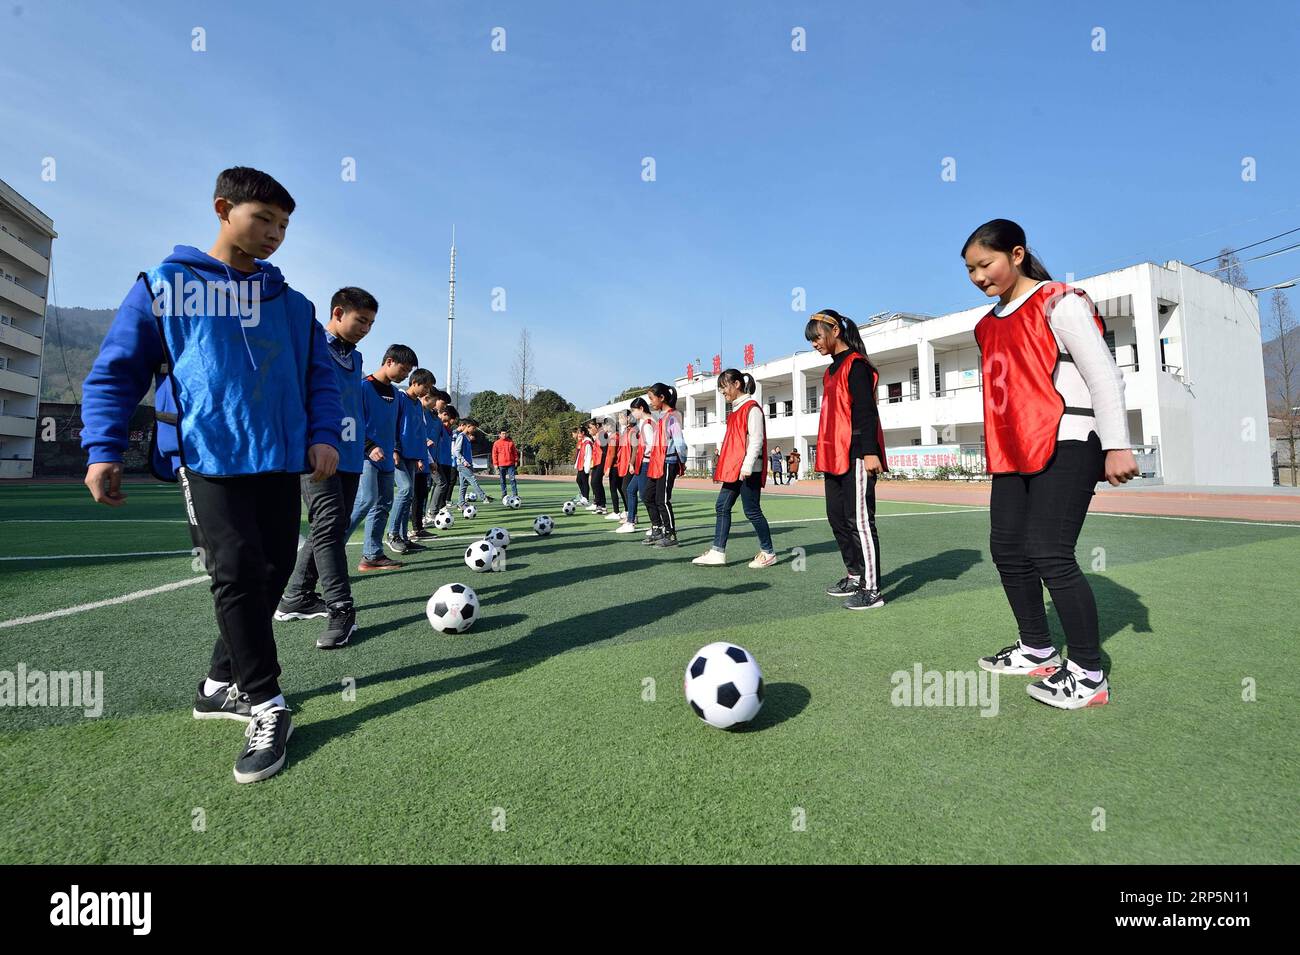 (181219) -- XIANGYANG, 19 déc. 2018 (Xinhua) -- des élèves pratiquent le soccer à l'école centrale de Xiema Town, dans le canton de Xiema, dans le comté de Baokang, dans la province du Hubei en Chine centrale, 18 déc. 2018. Xiema Town Central School, un internat rural situé dans une région montagneuse reculée de la province du Hubei, est la première école pilote de football à Baokang. L'école a construit un terrain de football en 2015, et a ajouté le football à son programme, offrant aux étudiants un accès à plus de chances de jouer au football, ainsi qu'aider les jeunes footballeurs à poursuivre leurs rêves. (Xinhua/Yang Tao) CHINA-HUBEI-RURAL-SOCC Banque D'Images